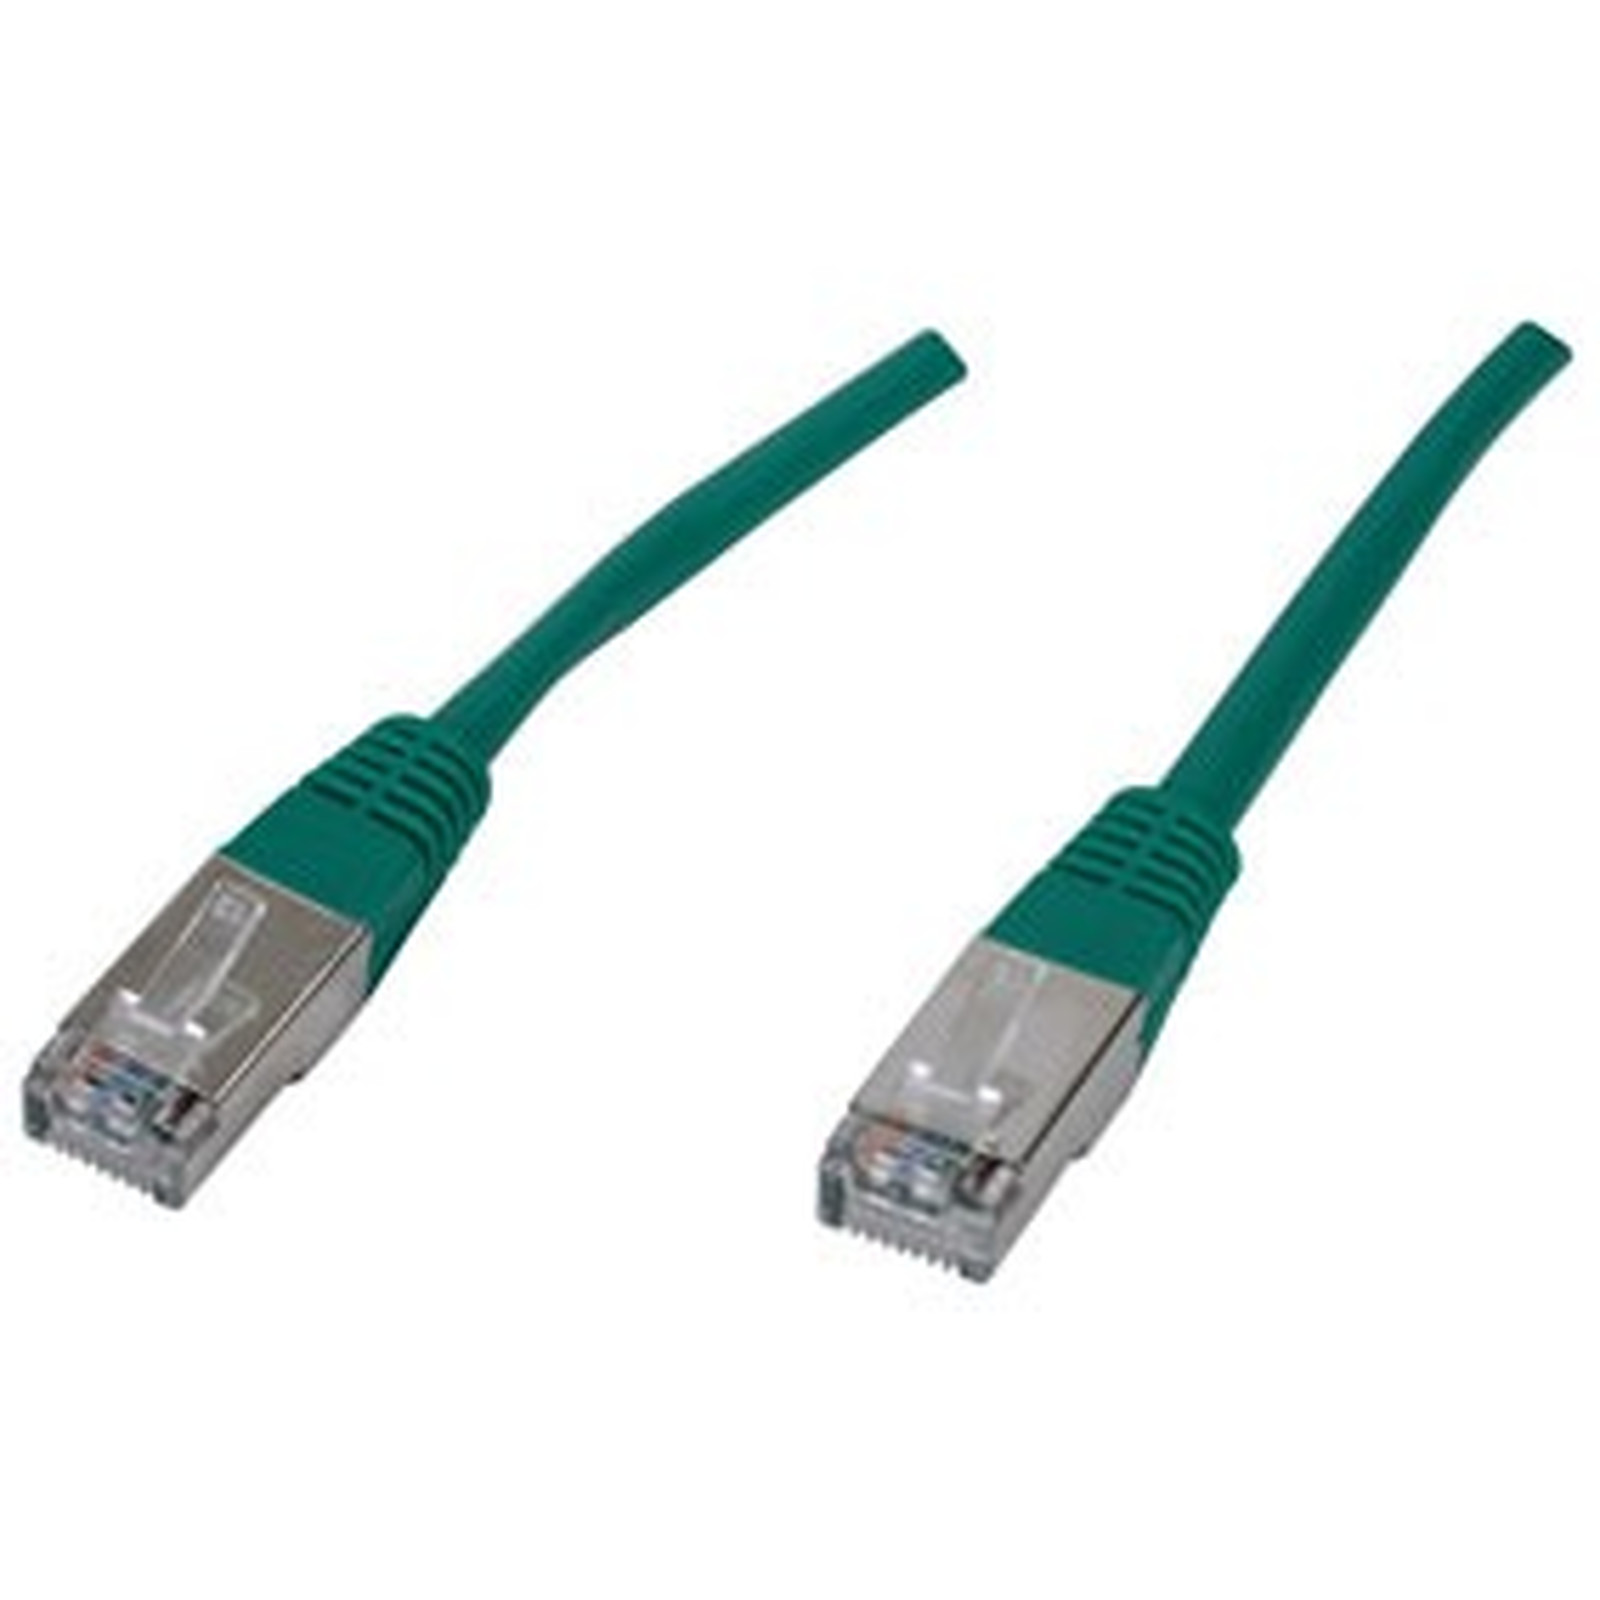 Cable RJ45 categorie 6 F/UTP 0.5 m (Vert) - Cable RJ45 Generique